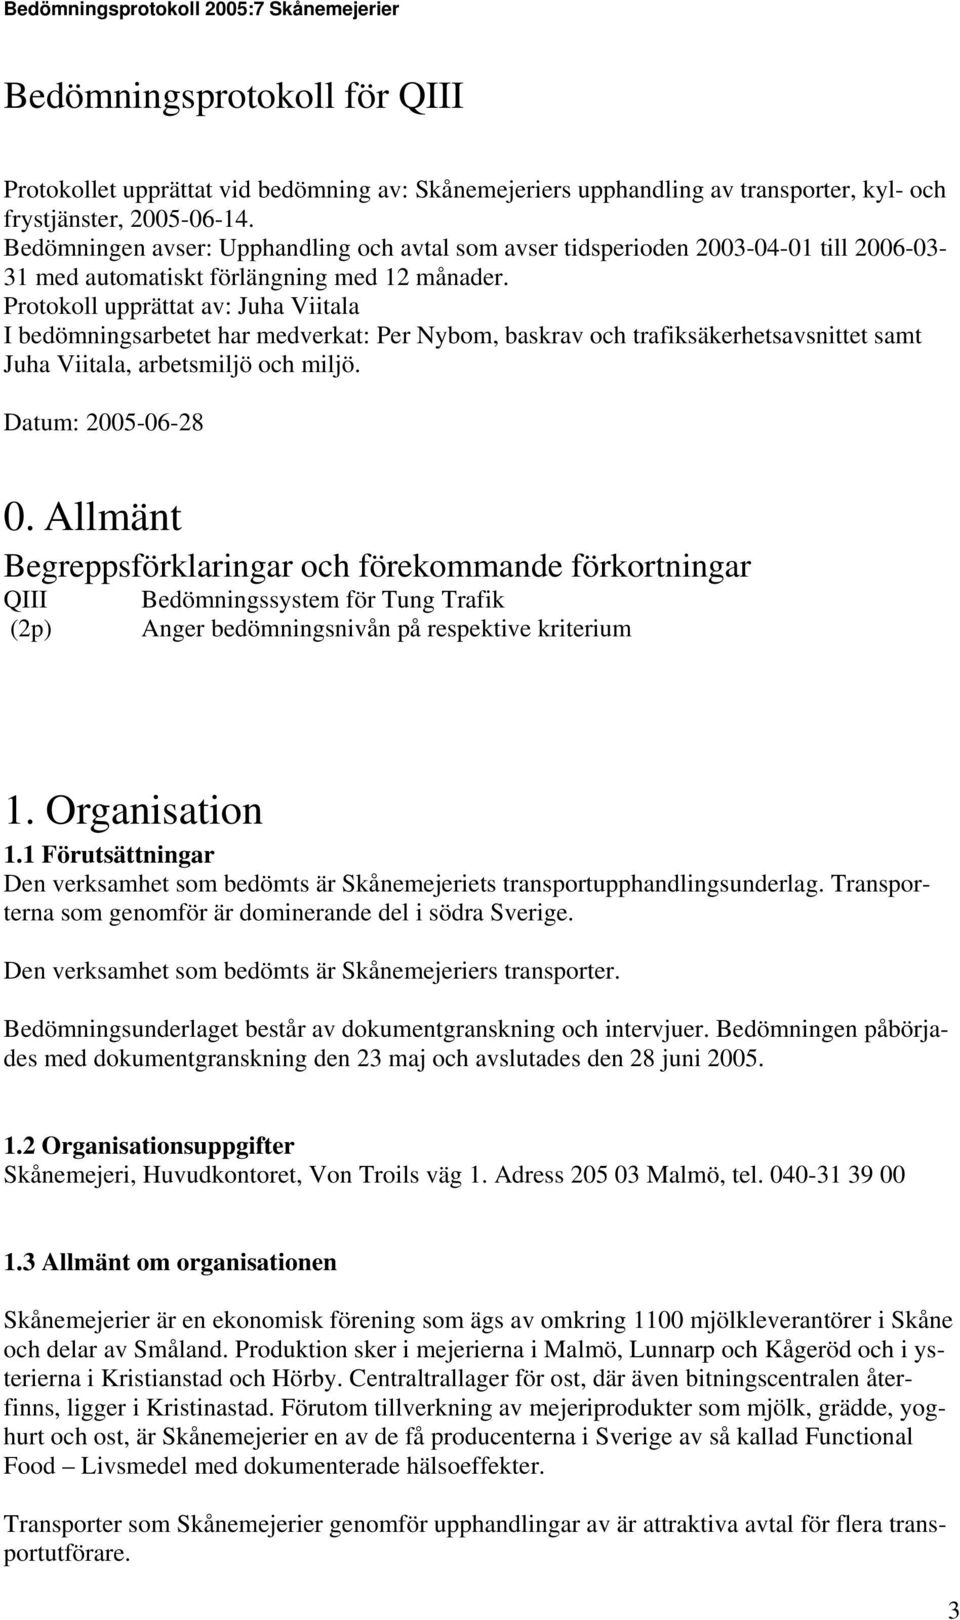 Protokoll upprättat av: Juha Viitala I bedömningsarbetet har medverkat: Per Nybom, baskrav och trafiksäkerhetsavsnittet samt Juha Viitala, arbetsmiljö och miljö. Datum: 2005-06-28 0.